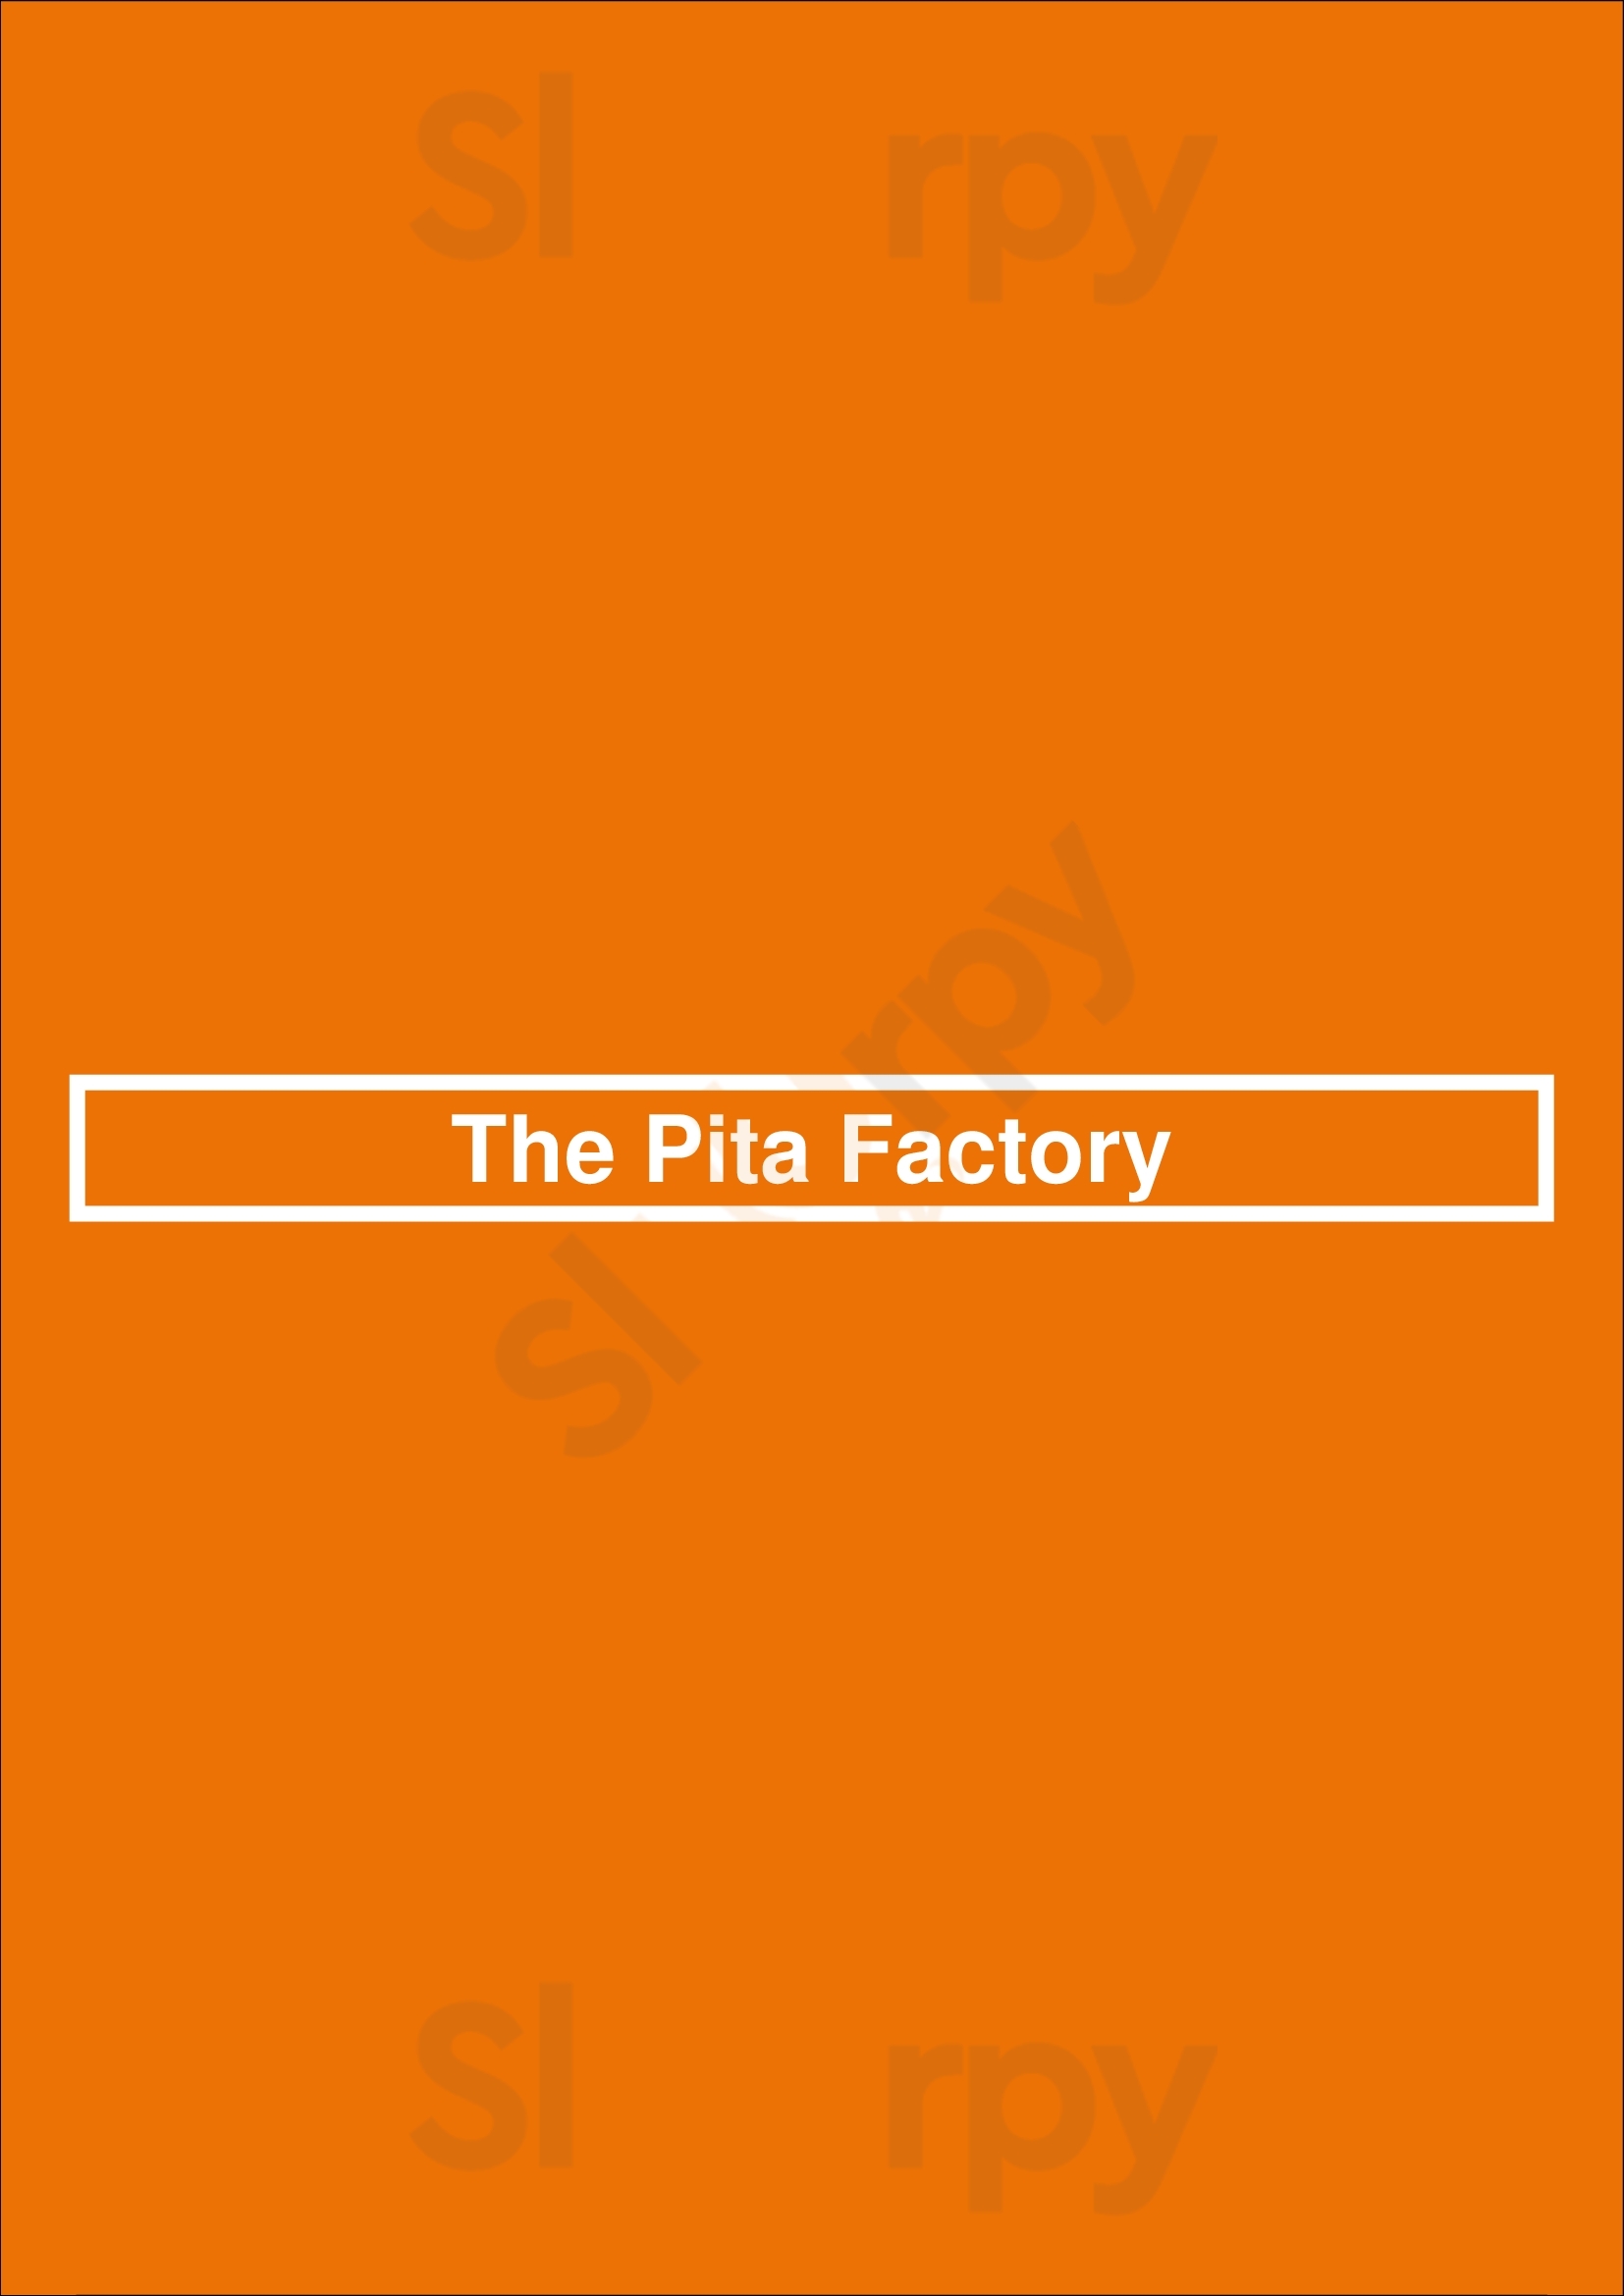 The Pita Factory Kitchener Menu - 1